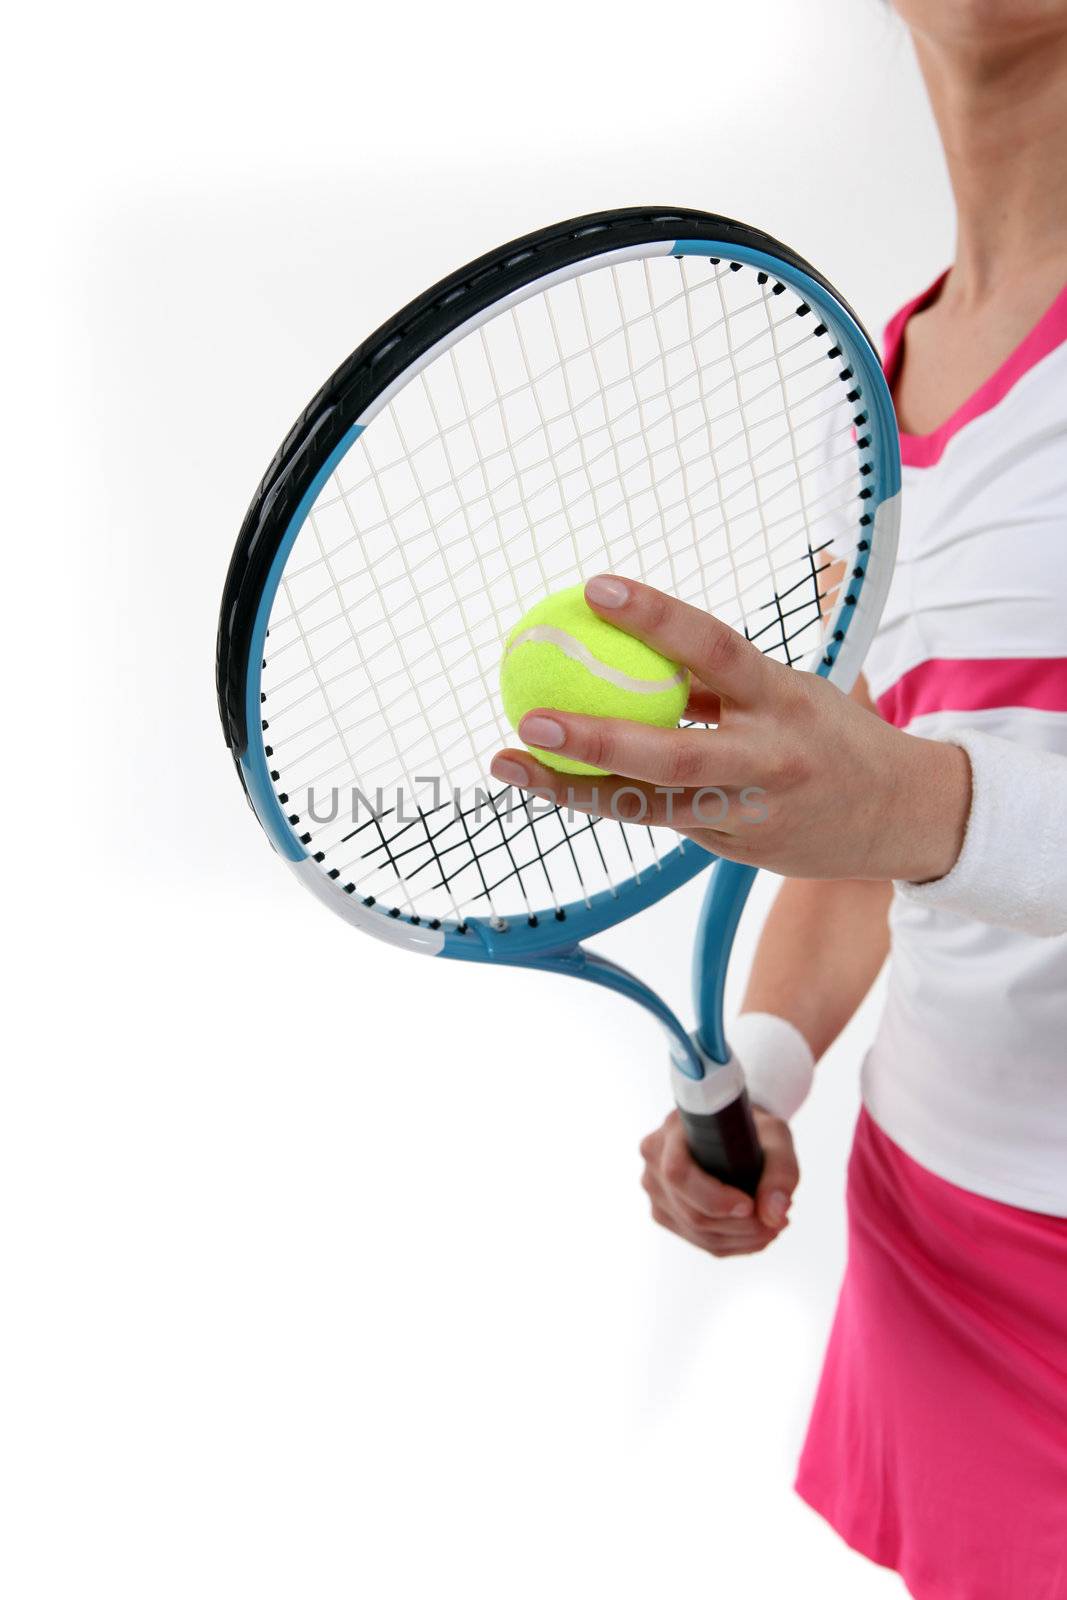 Tennis racket by phovoir